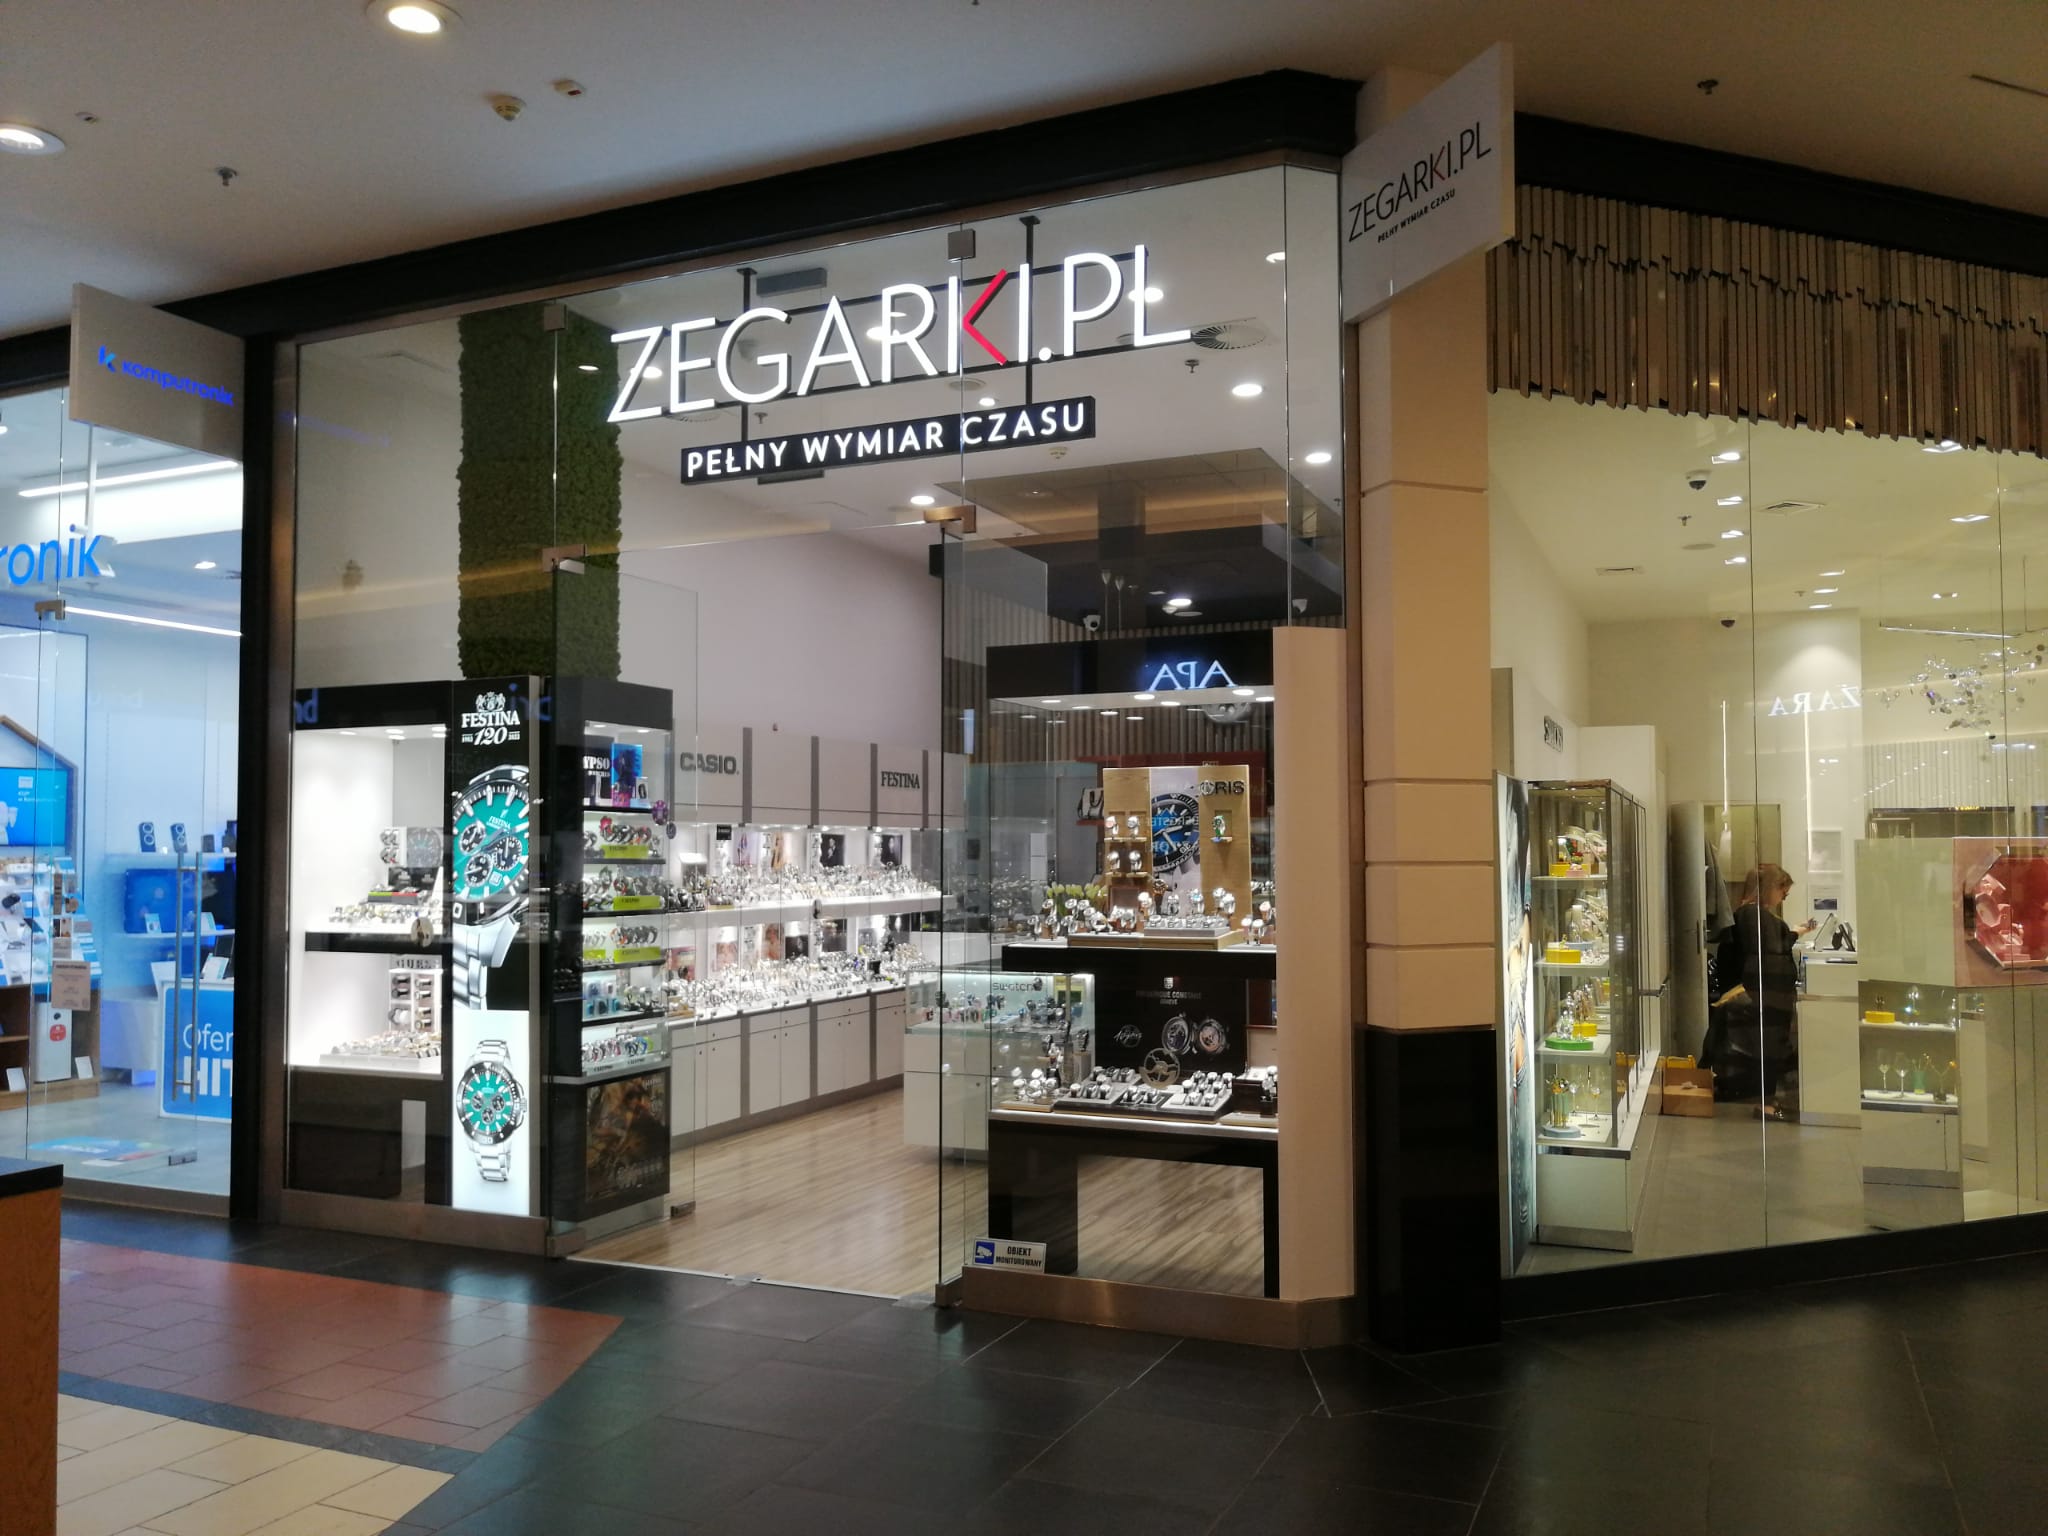 Salon firmowy Zegarki.pl we Wrocławiu